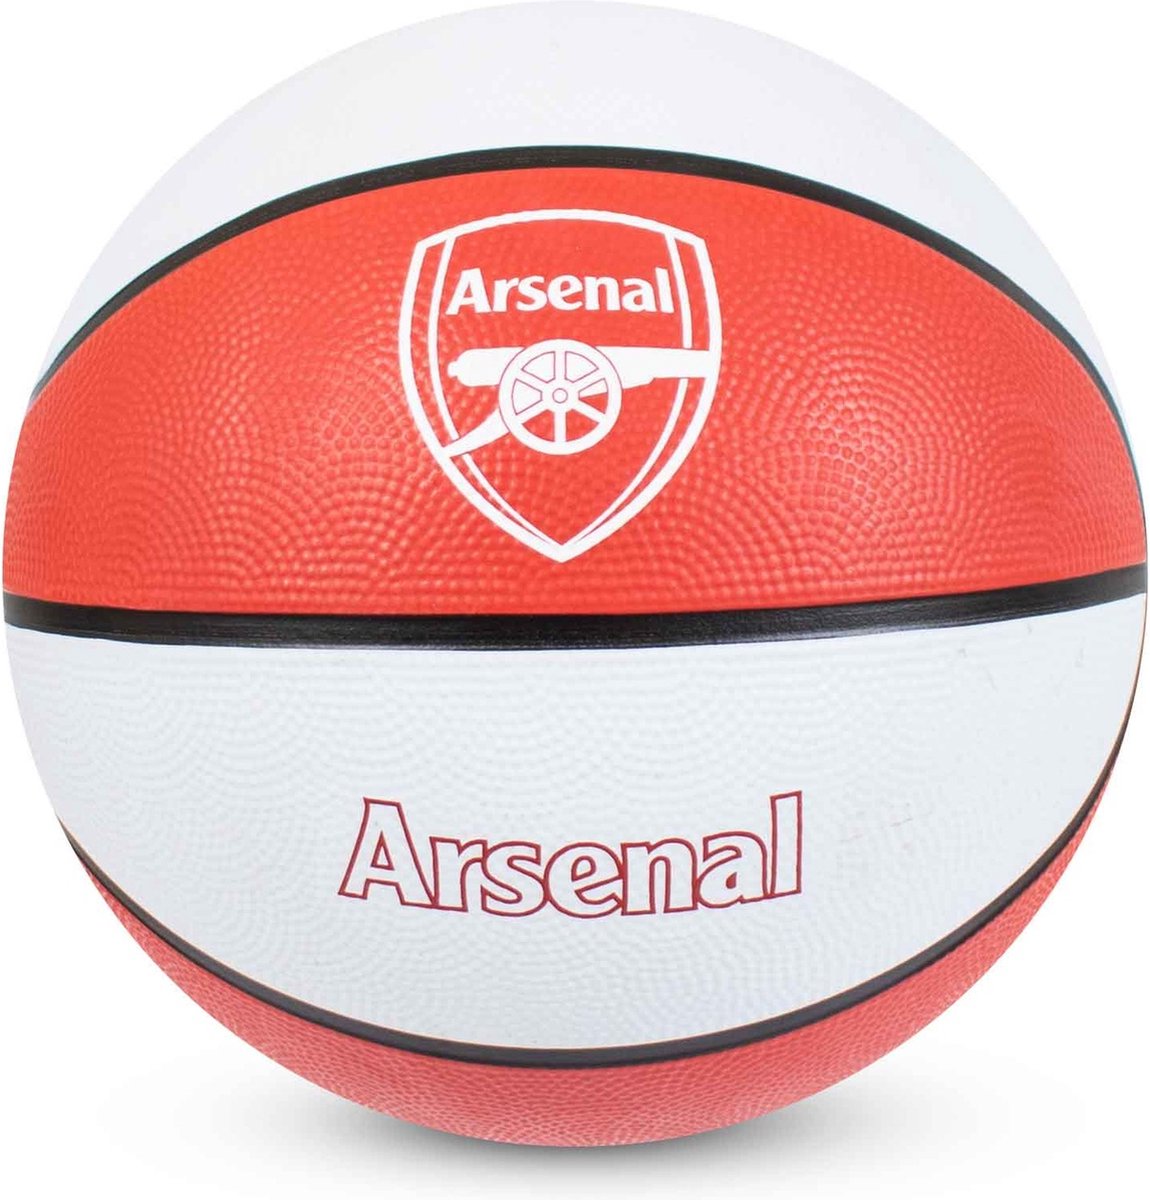 Arsenal FC - Basketbal - maat 7